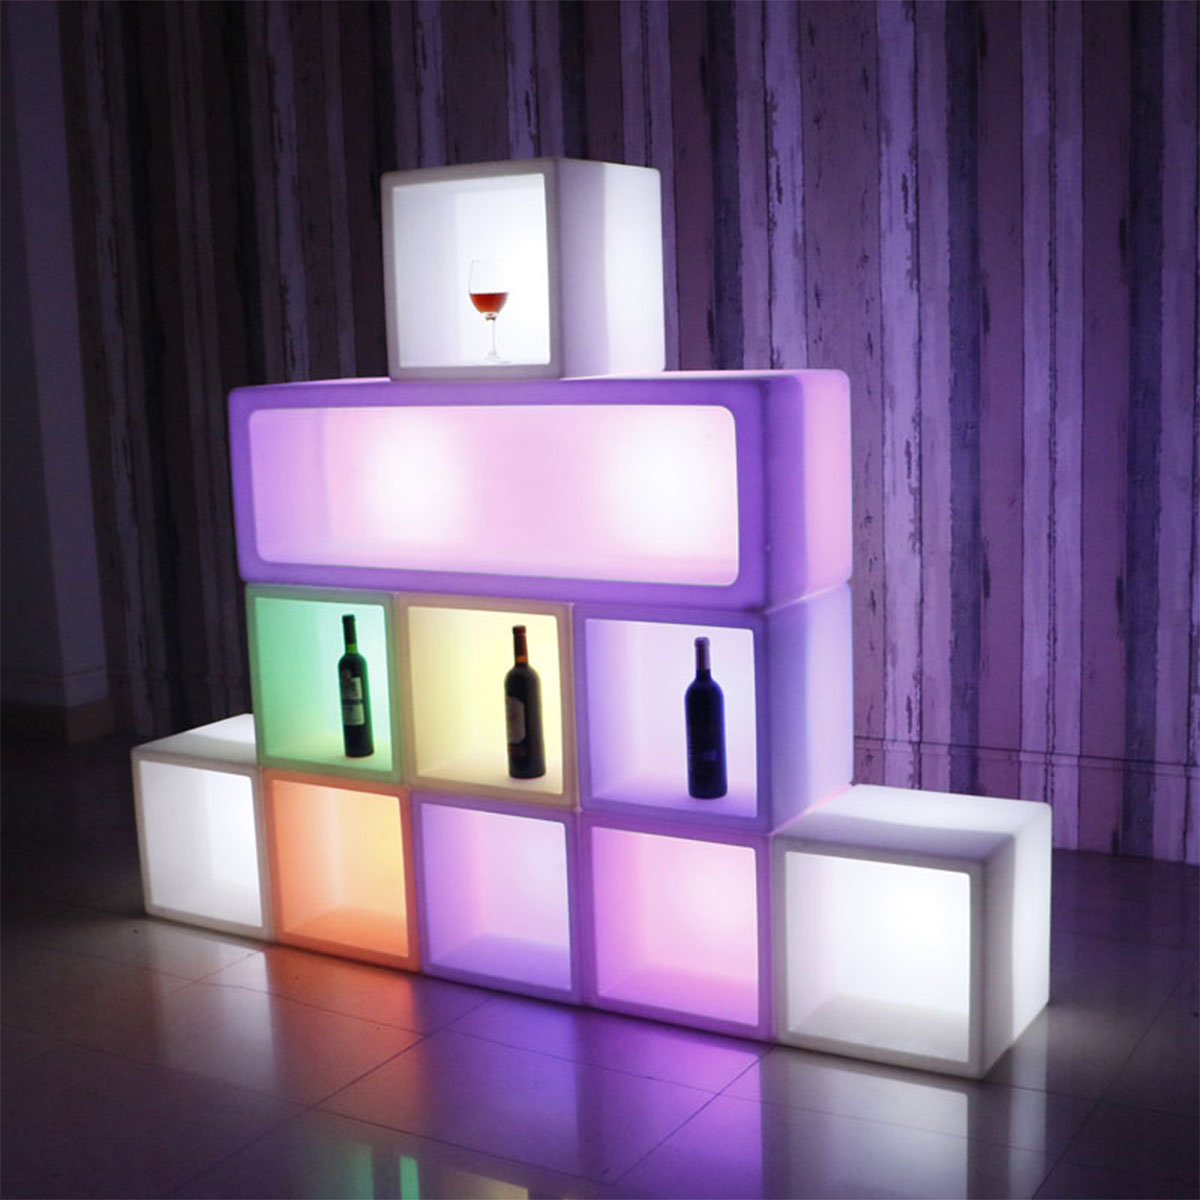 [40×40cm] VeroMan 光る 収納ブロック LED ライト リモコン付き 光るオブジェ ワインラック 屋外 装飾 イベント バー ラウンジ 光る家具 韓国インテリア